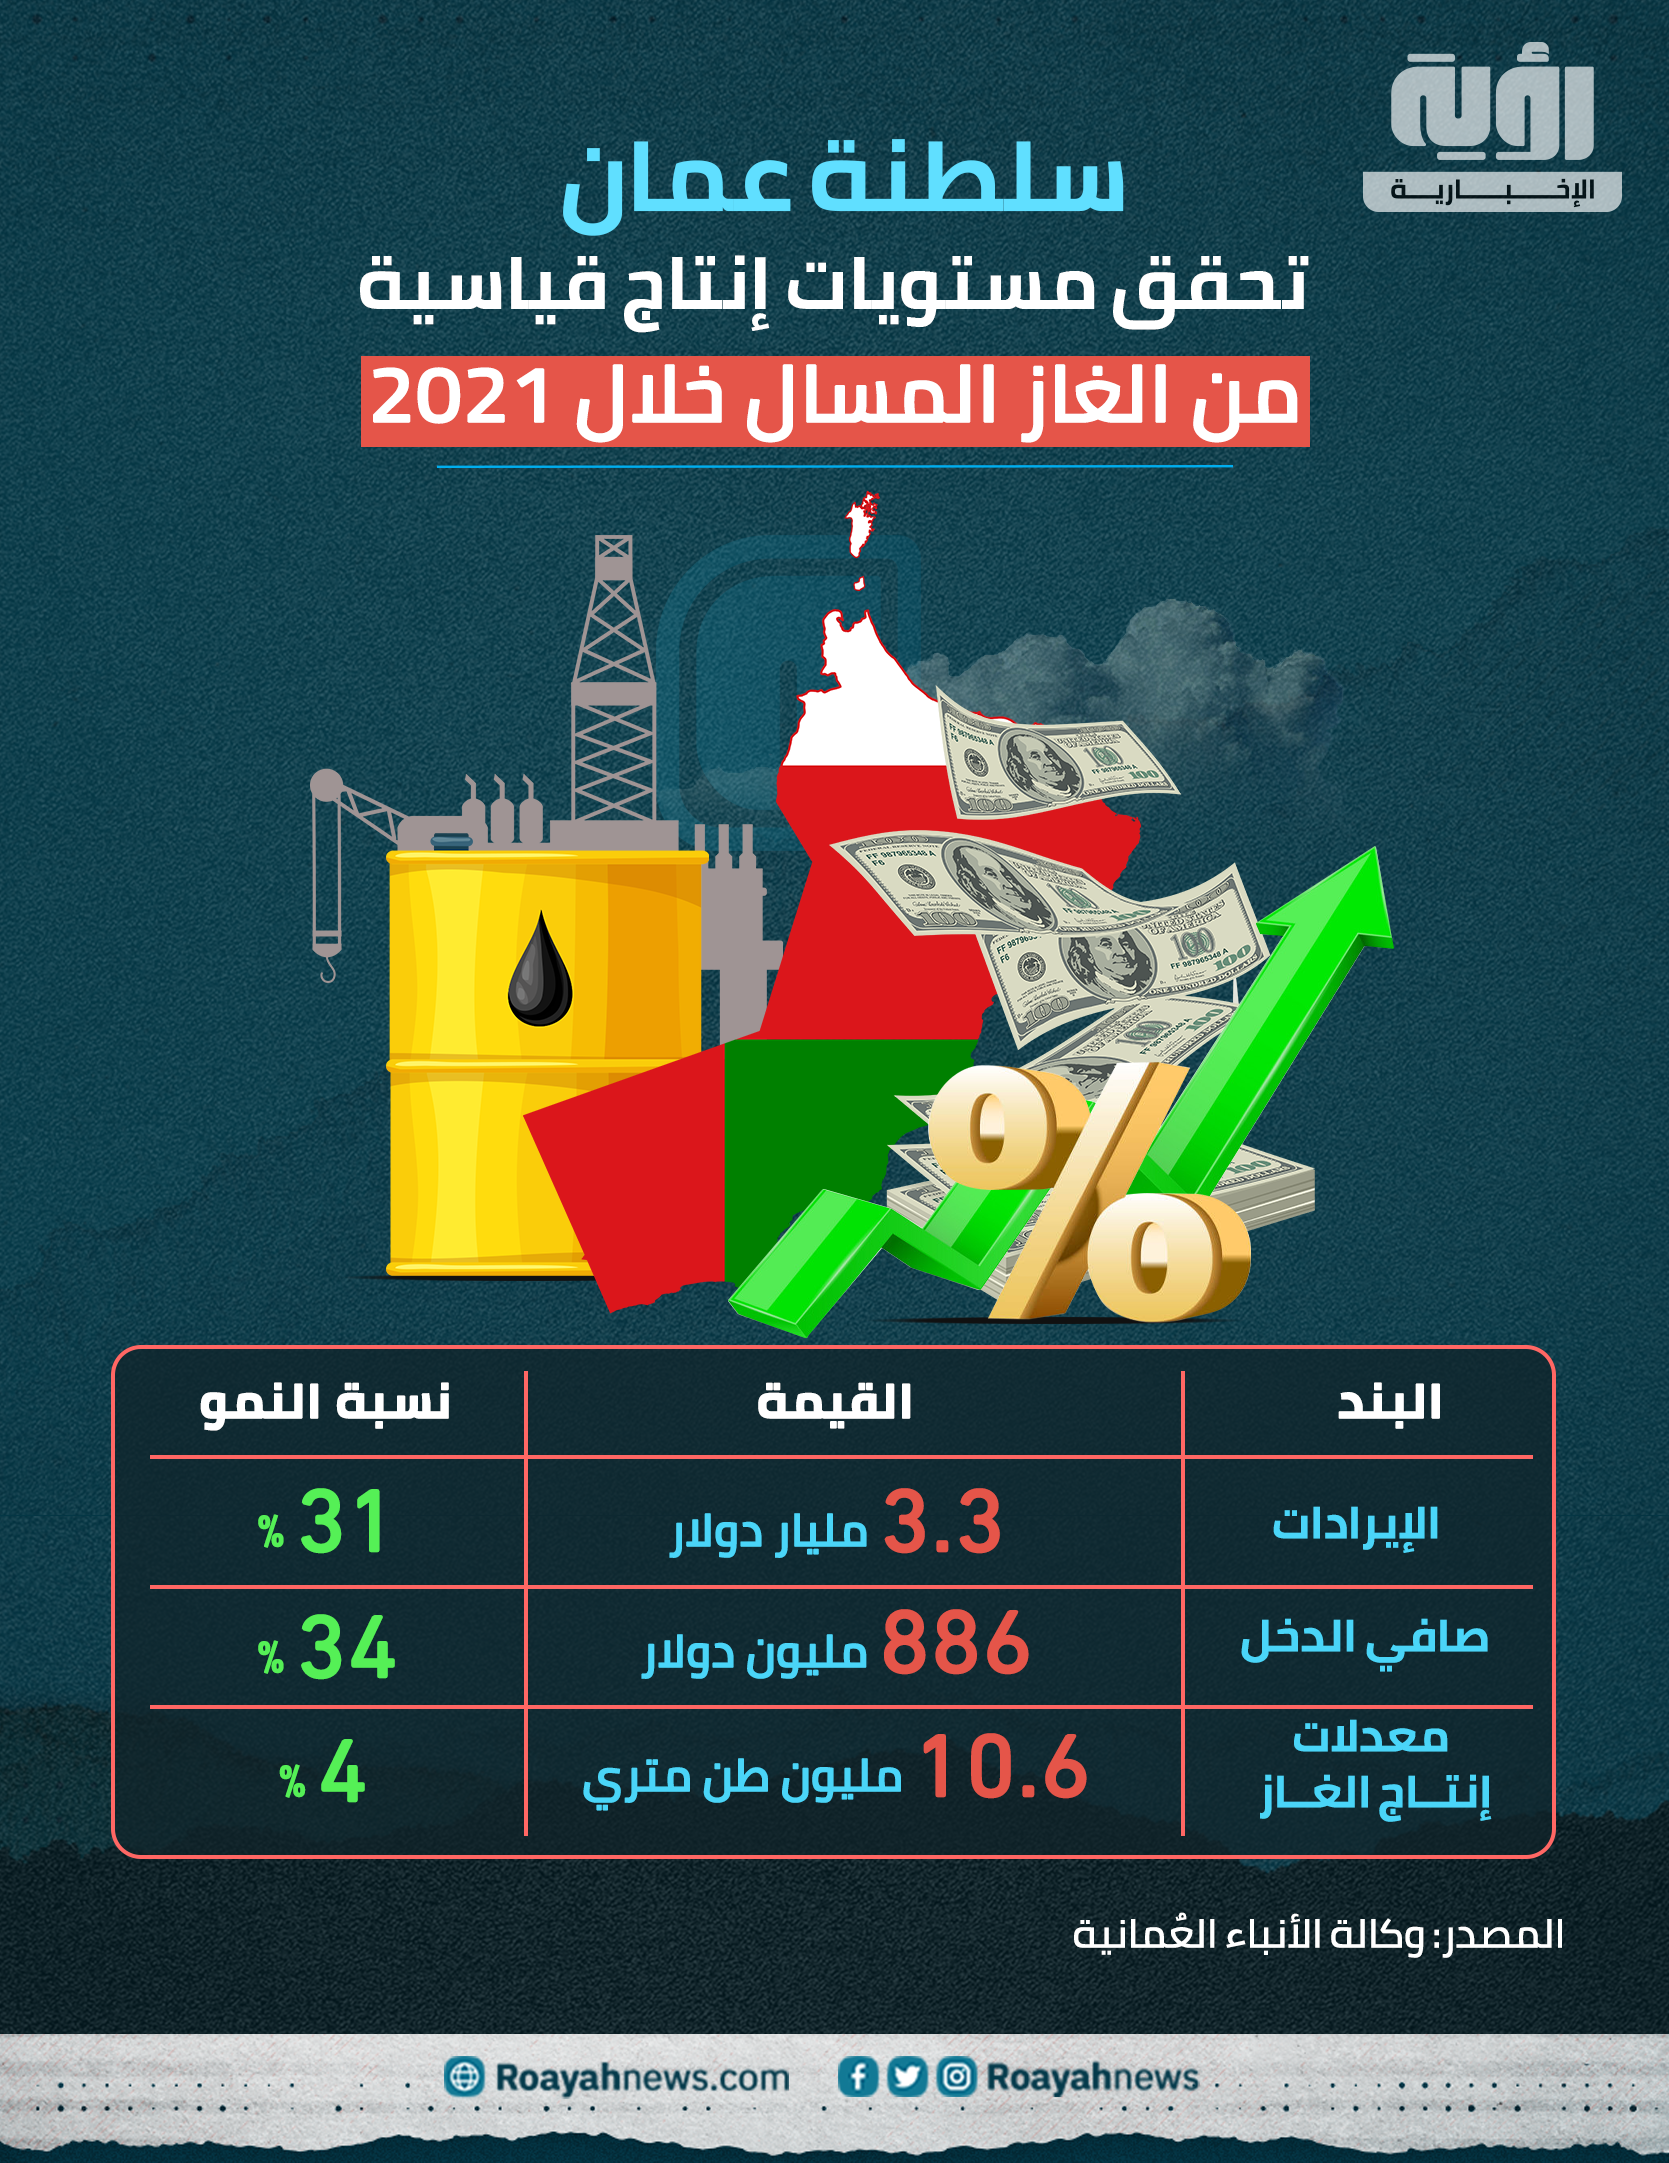 سلطنة عمان تحقق مستويات إنتاج قياسية من الغاز المسال خلال